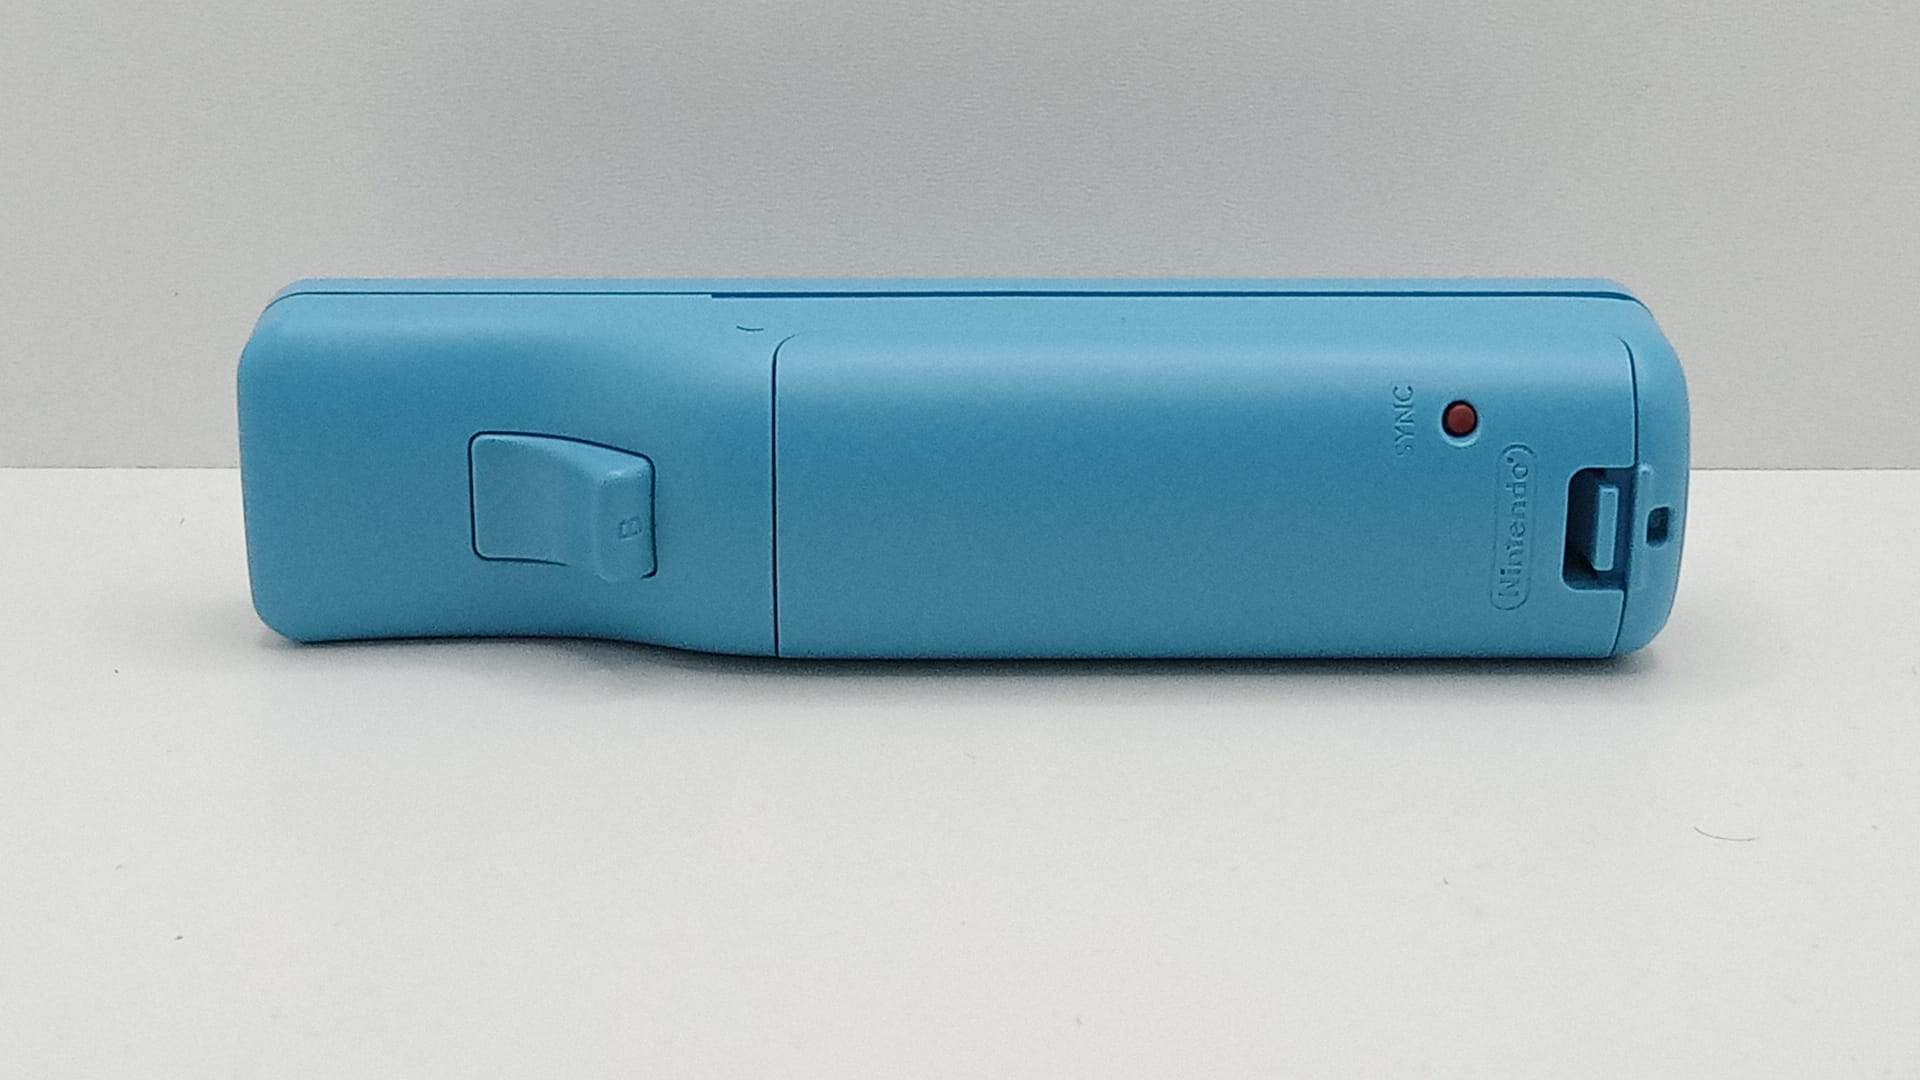 Nintendo Wii Remote - motion plus - Albastru - Original Nintendo - curatat si reconditionat